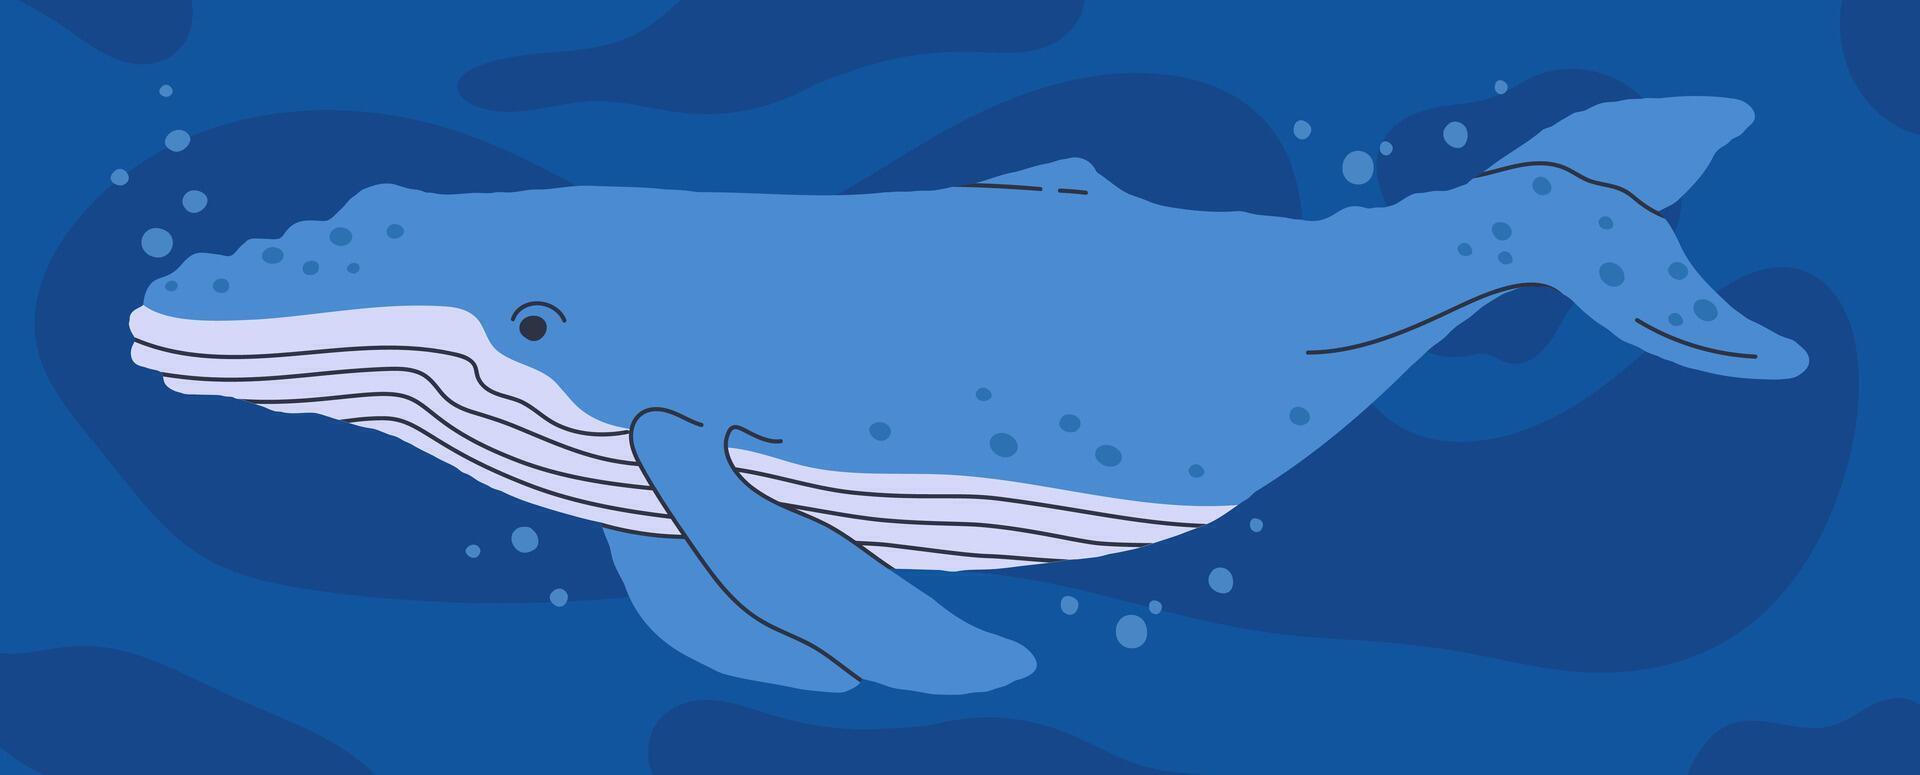 salvaje ballena. submarino Oceano animal, acuático fauna, Oceano naturaleza mamífero animal plano ilustración. mano dibujado azul ballena vector